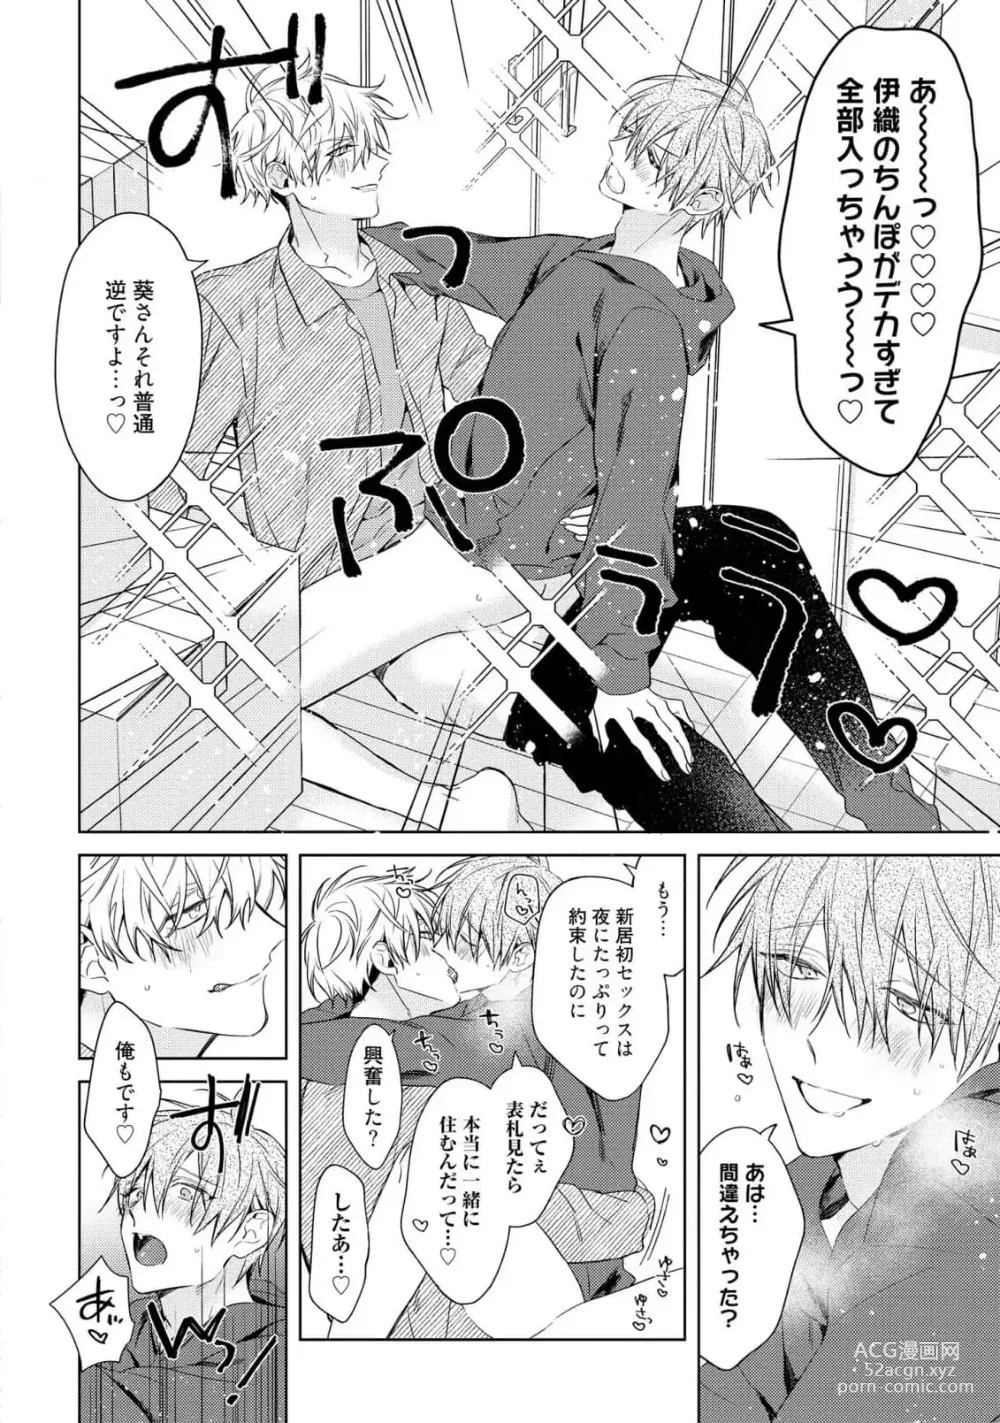 Page 8 of manga Motto! Ecchi wa shuu 7 Kibou Desu!